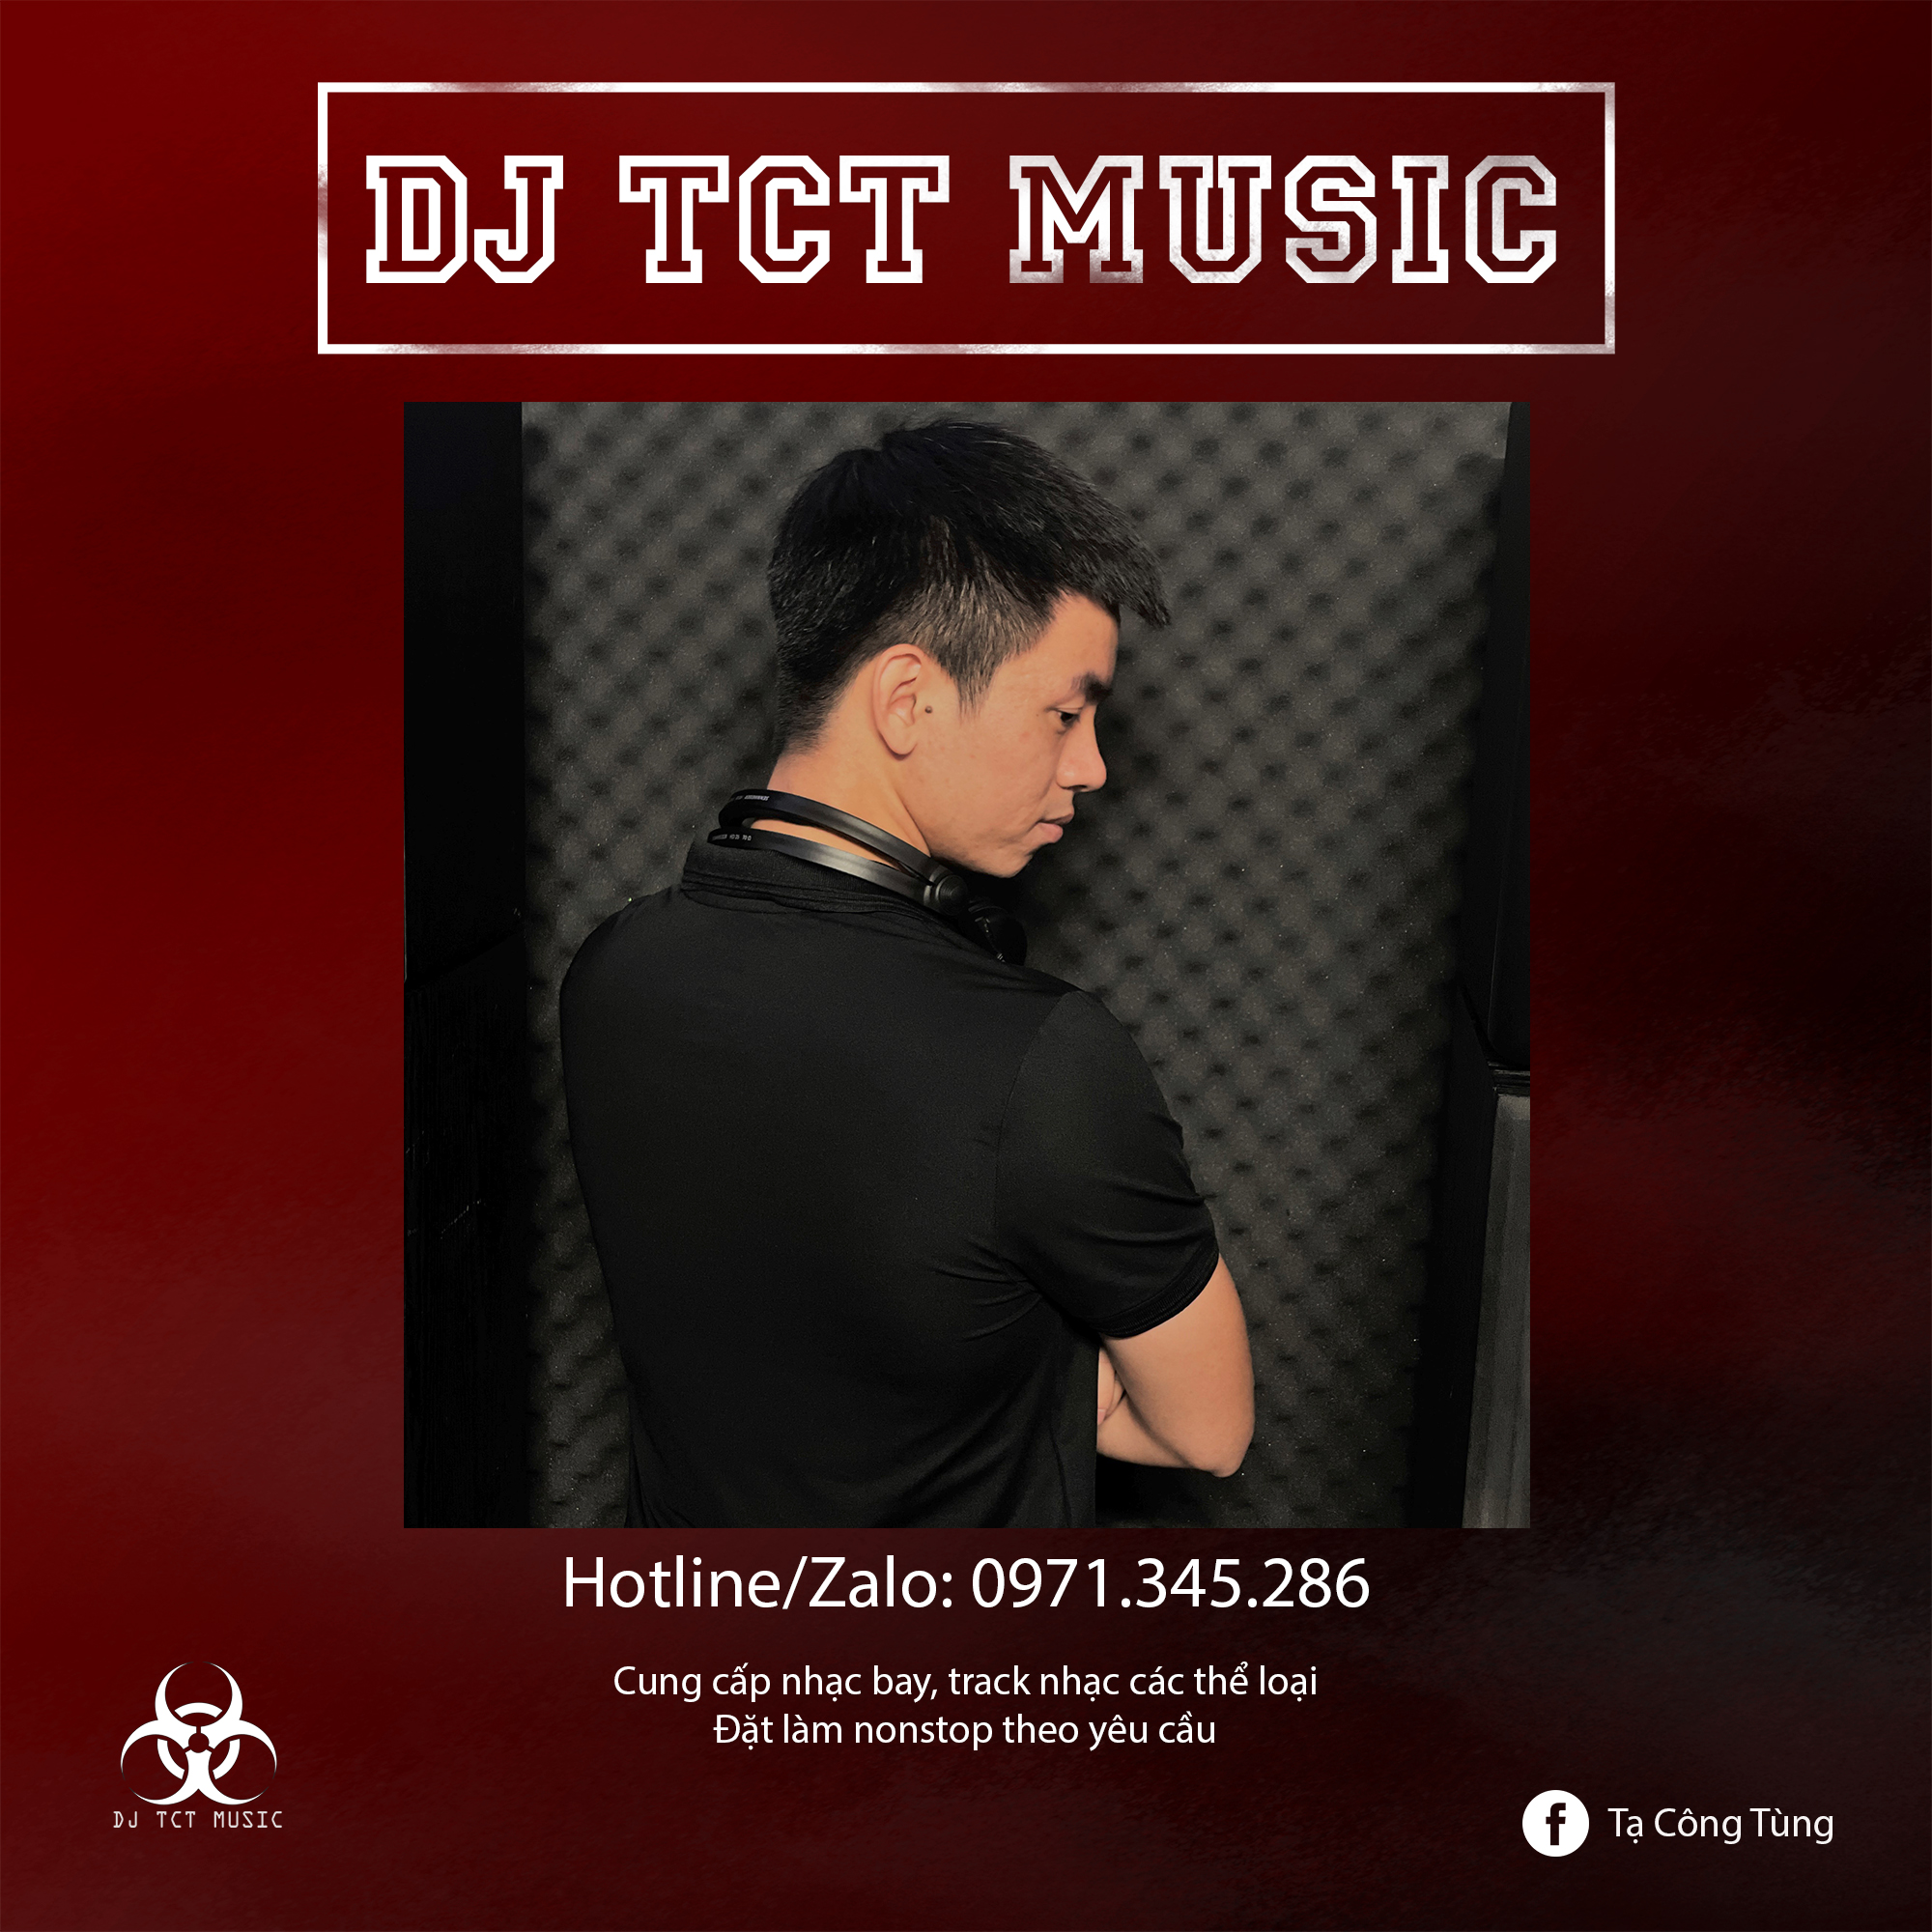 NONSTOP BAY PHÒNG BÍCH HẢI TRIỀU SINH 2022 (mua full 2h 0971345286) - DJ TCT MUSIC VÔ ĐỊCH PHÒNG BAY